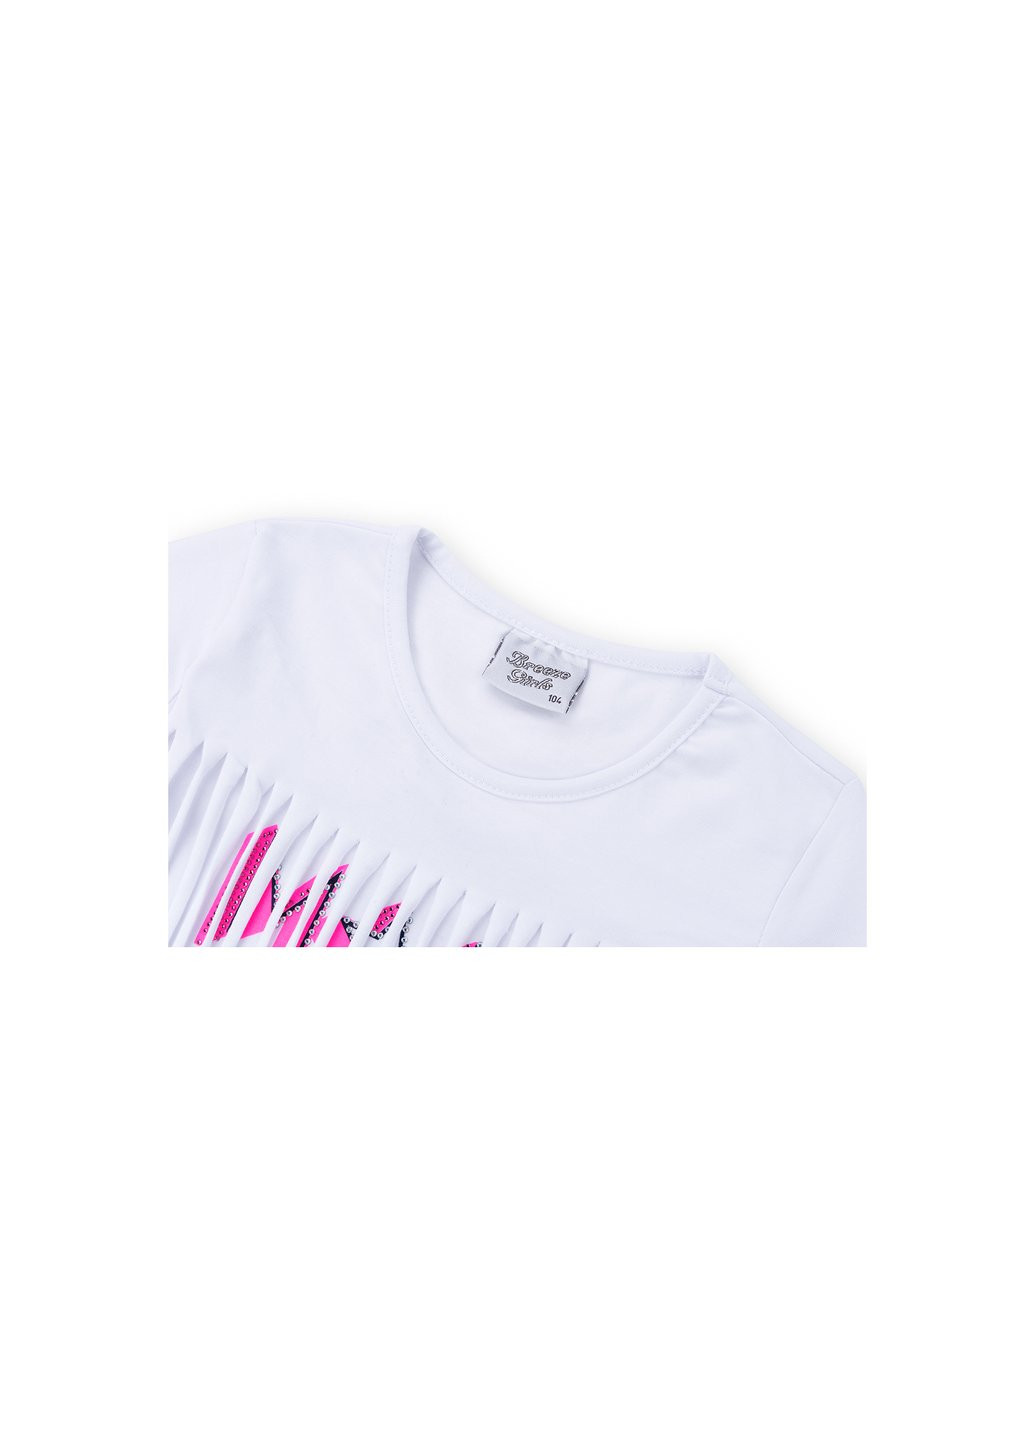 Комбинированный летний набор детской одежды футболка со звездочками с шортами (9036-98g-white) Breeze